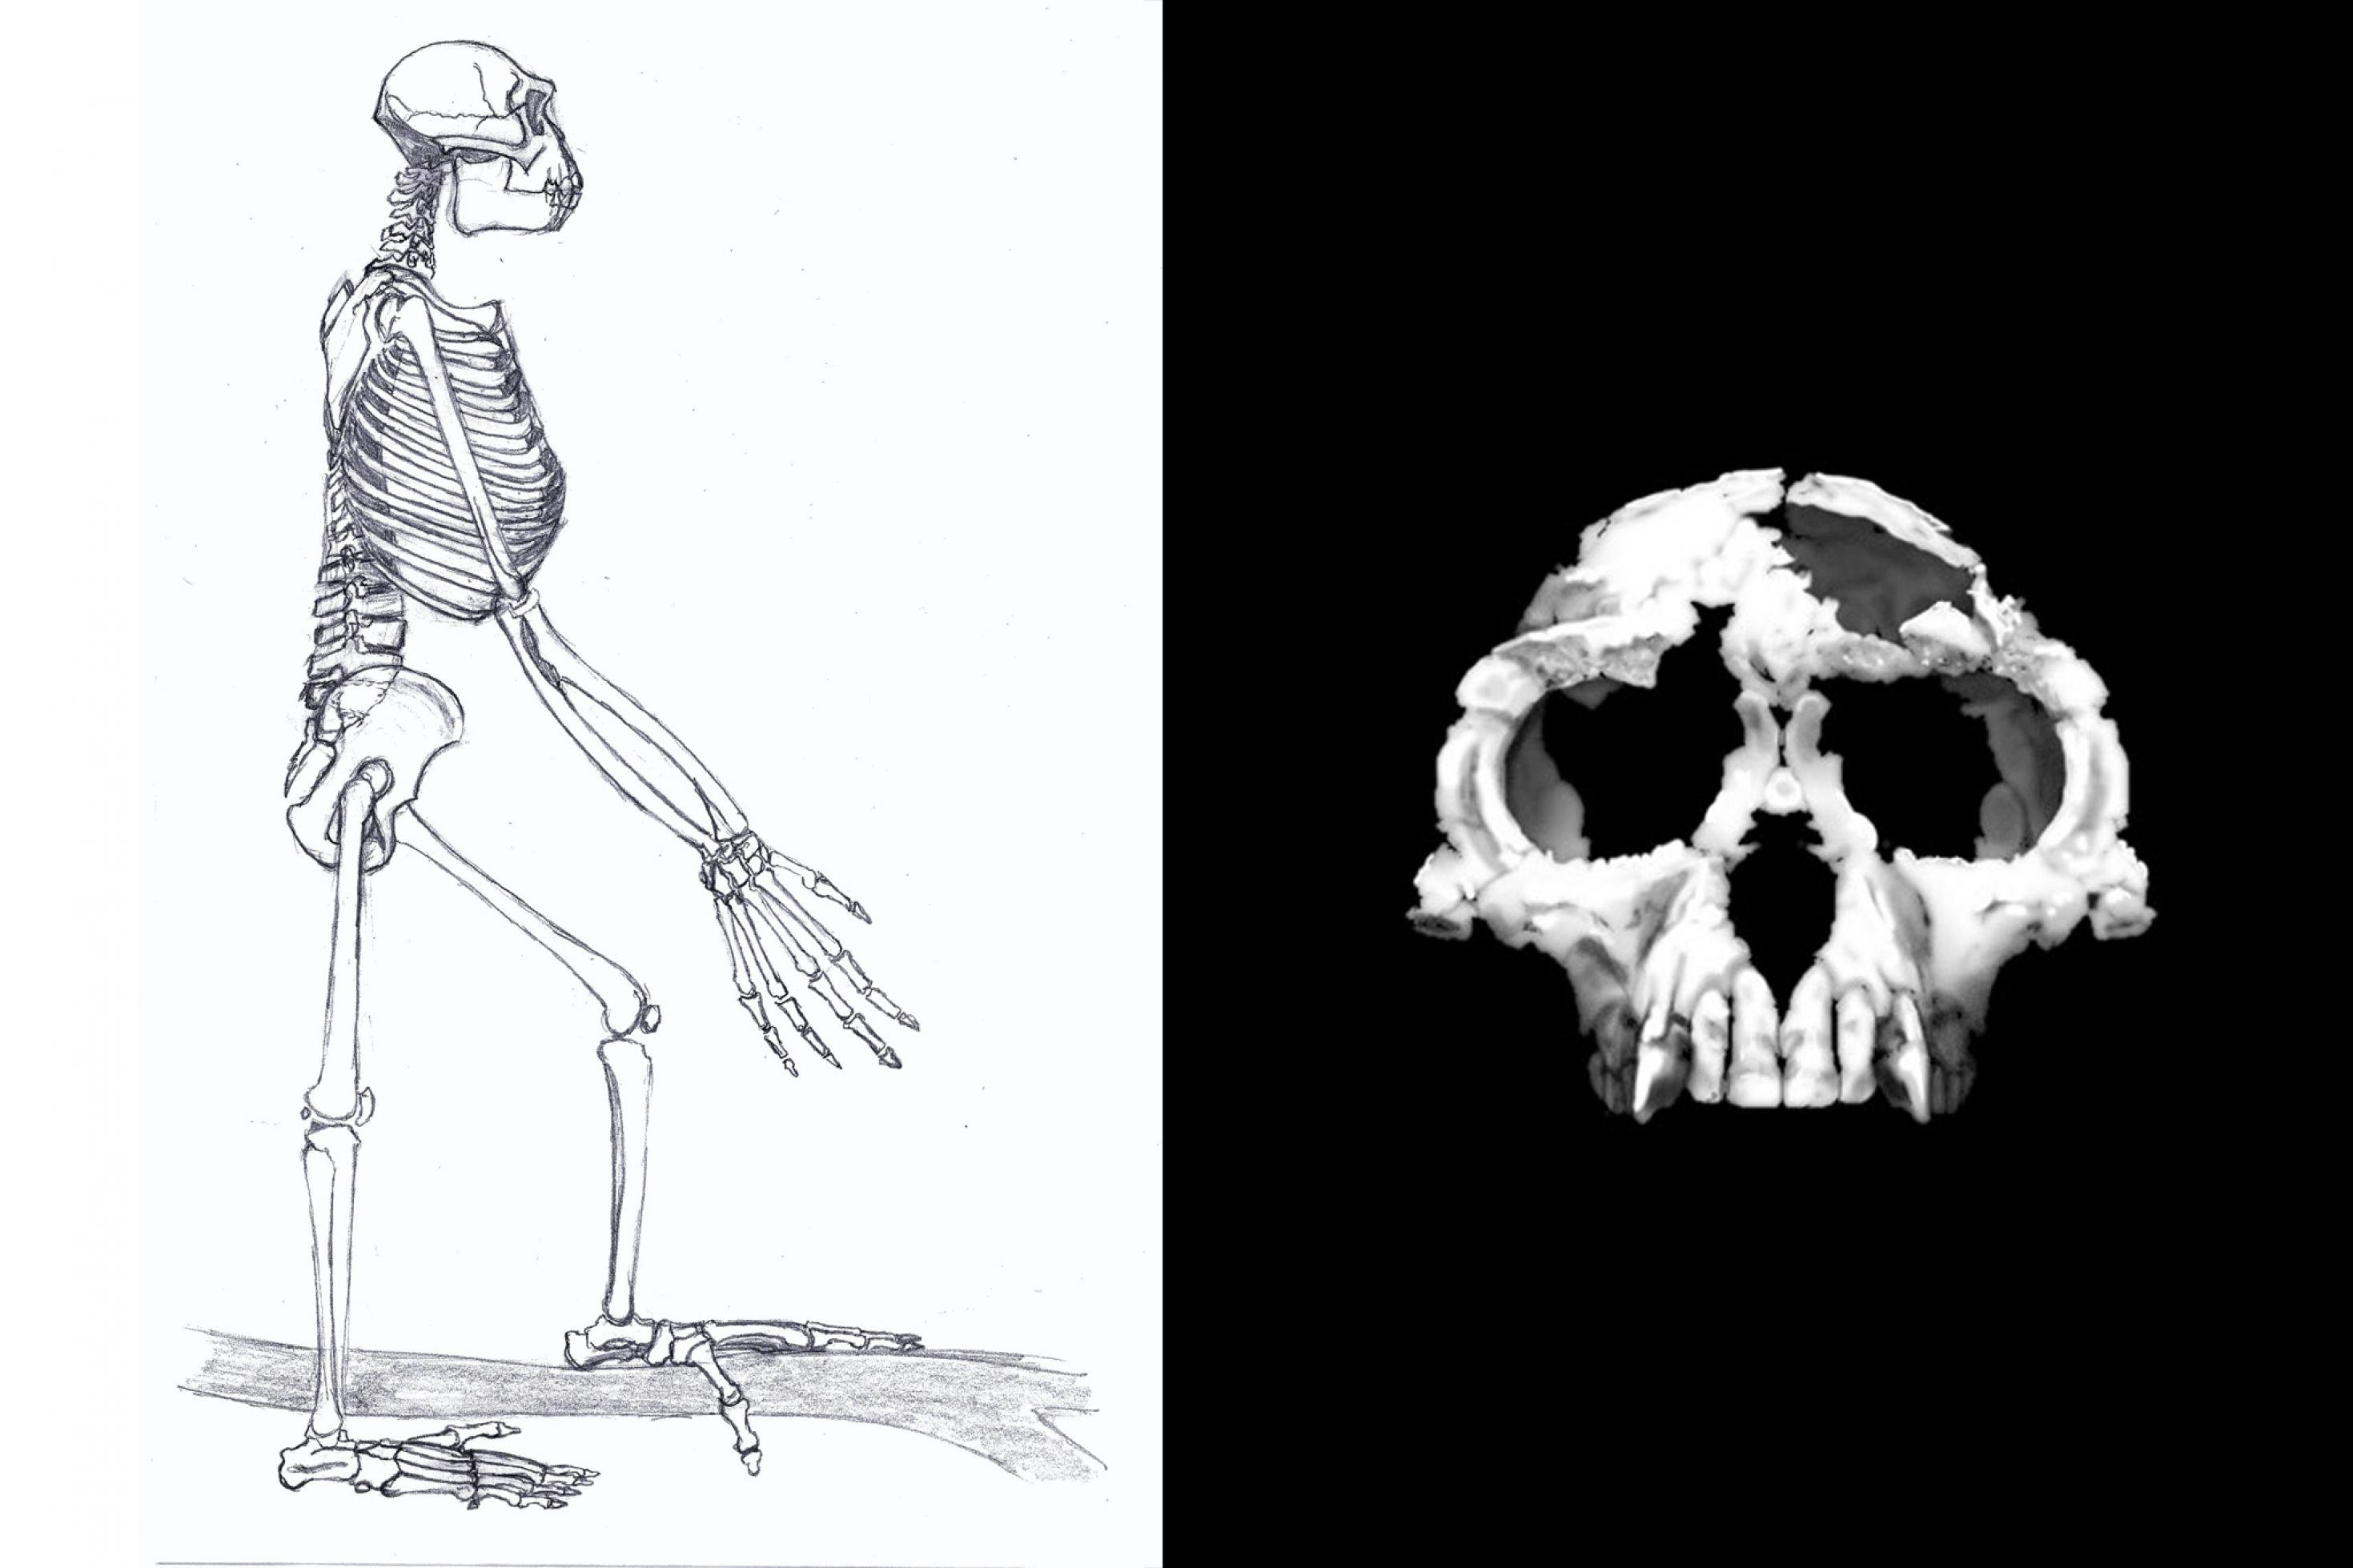 Links ist die Schwarz-weiß-Grafik vom Skelett eines aufrecht stehenden Wesens zu sehen: Der Vormensch Ardipithecus ramidus. Er zeigt lange Arme mit langen Fingern daran und Füße, die dank eines abspreizbaren großen Zehs gut Äste umgreifen können und damit für ein Leben auch auf Bäumen sprechen. Rechts ist der fossile Schädel von Ardipithecus zu sehen, der zeigt: Viel Hirn besaß dieser menschliche Verwandte noch nicht.